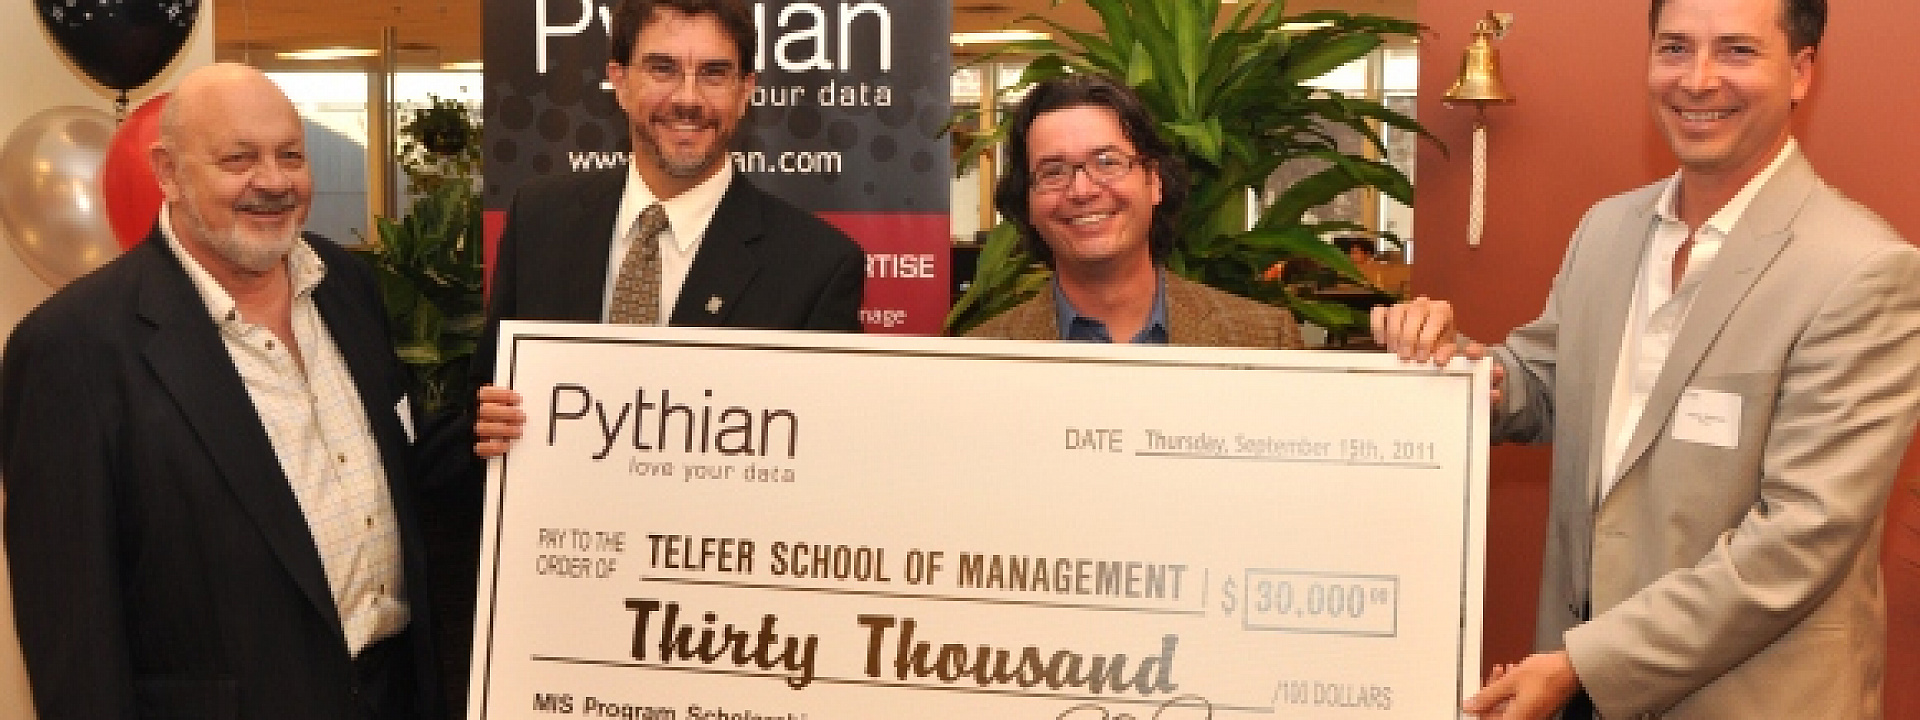 Pythian donates $30,000 to create MIS Scholarships